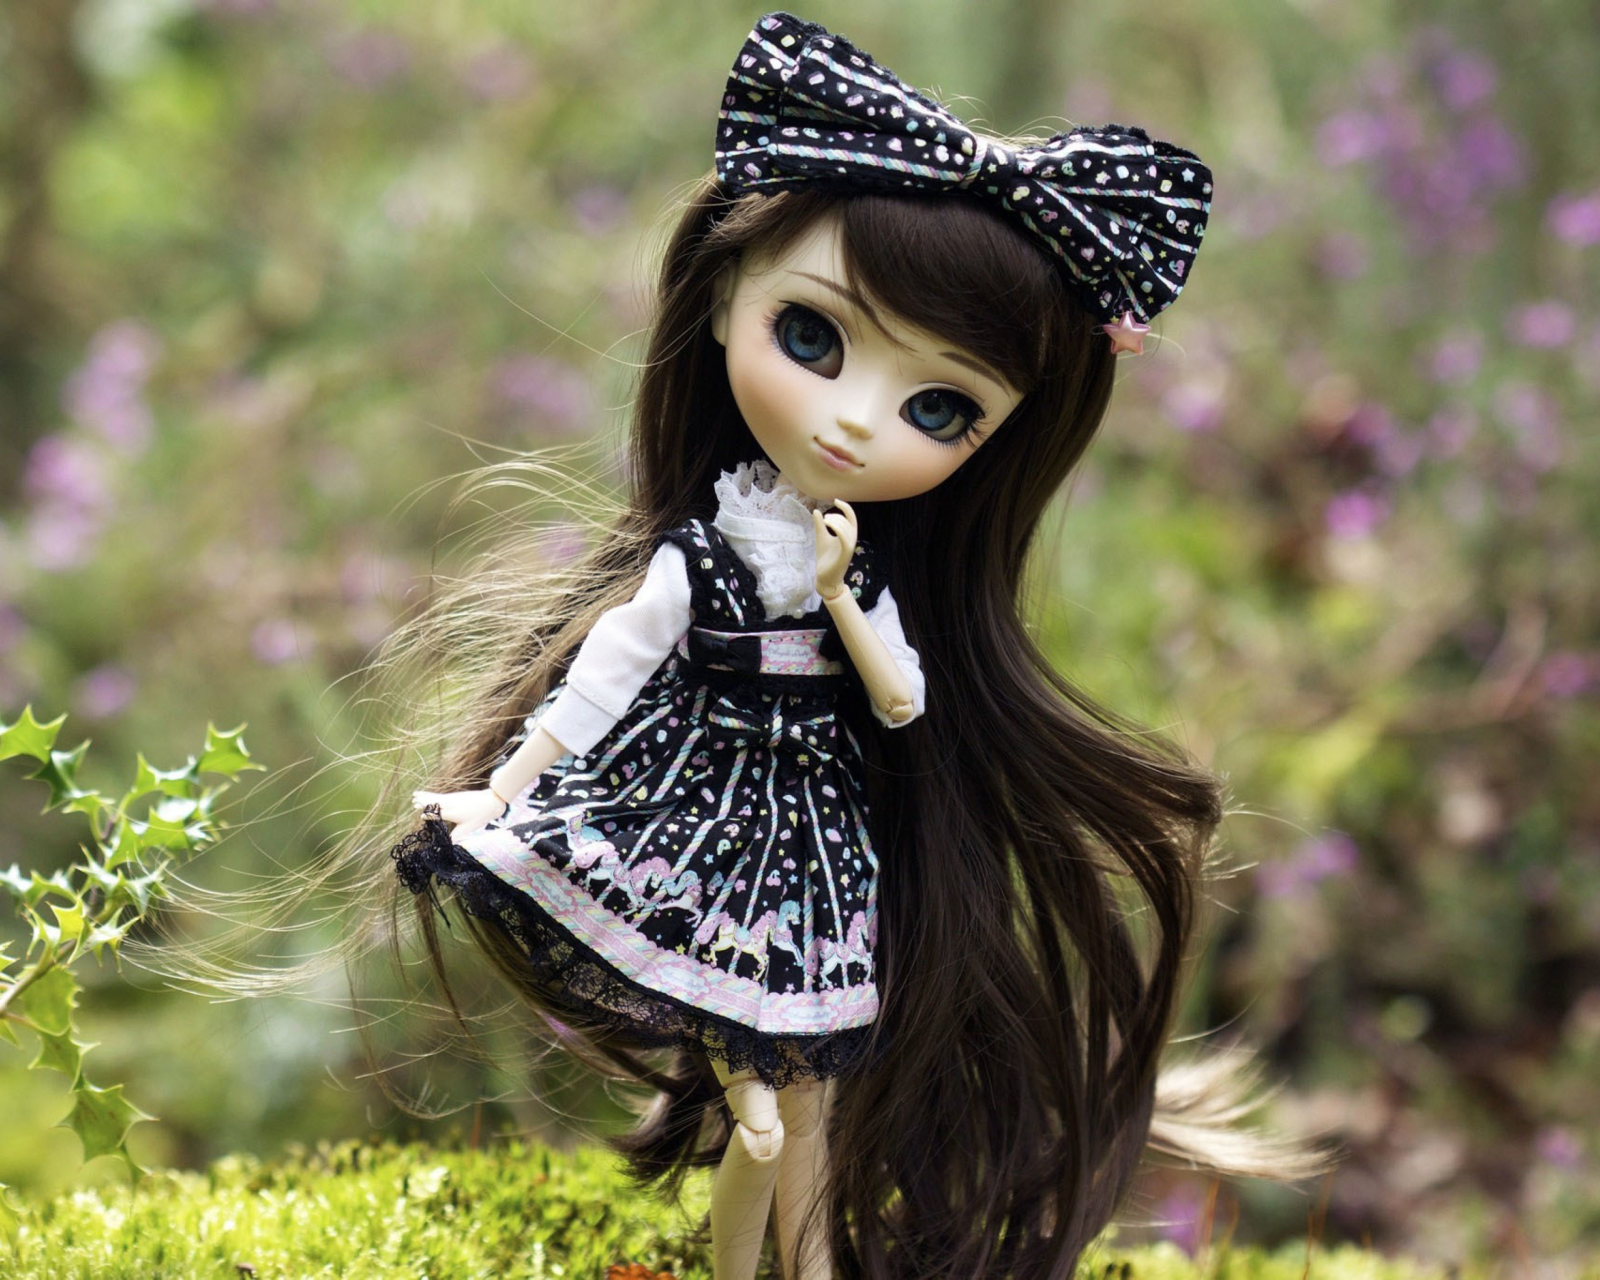 Обои Cute Doll With Dark Hair And Black Bow 1600x1280